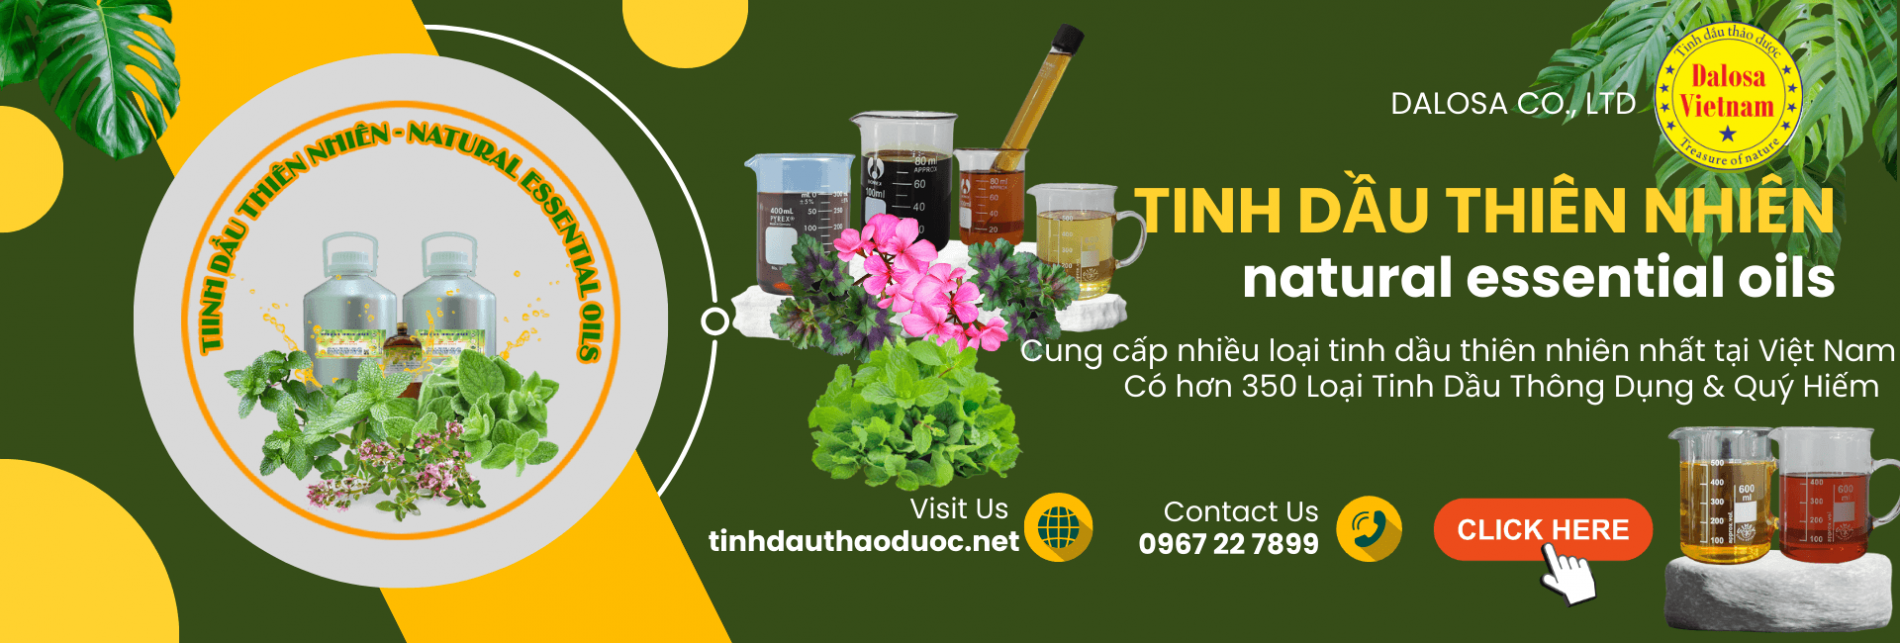 tinh-dau-thien-nhien-natural-essential-oils_1